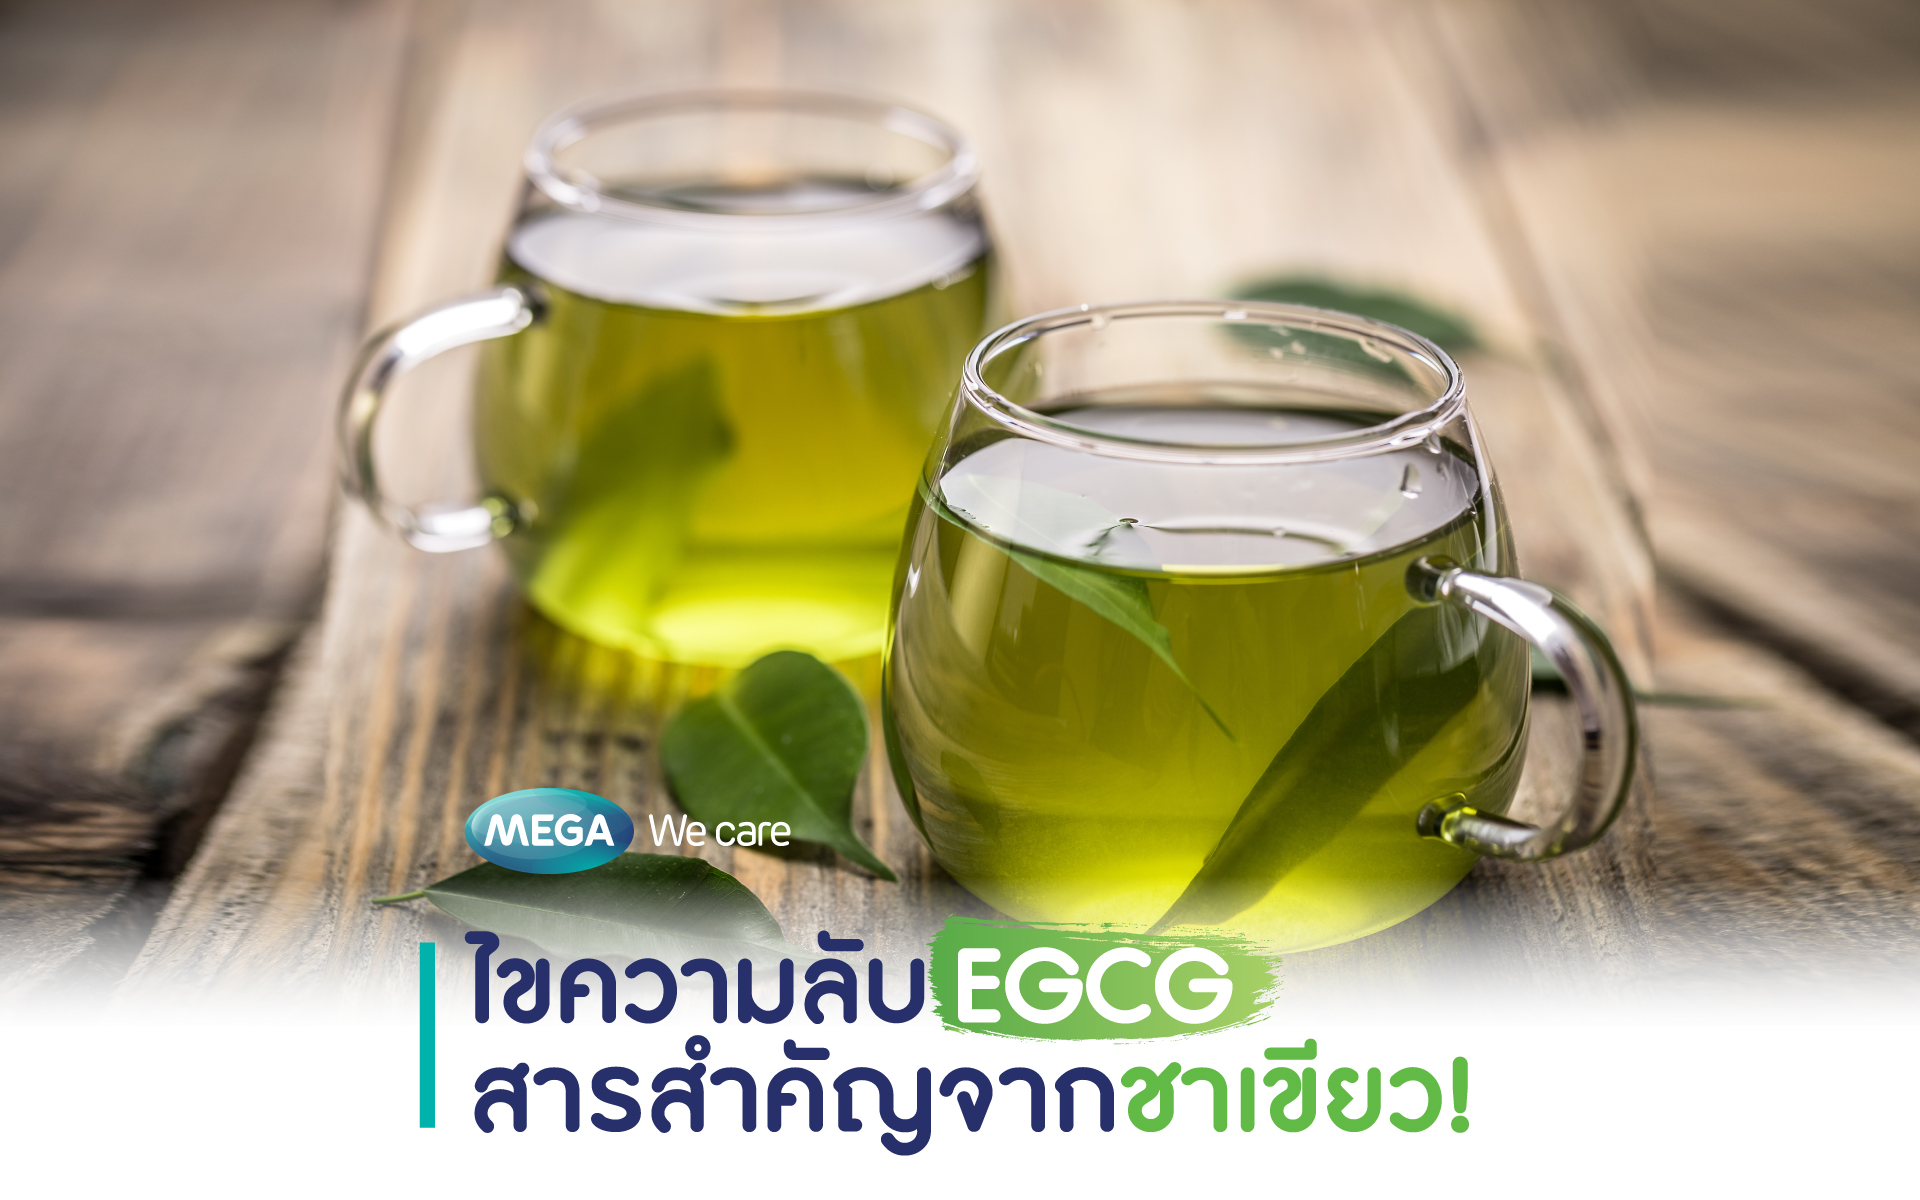 ไขความลับ  EGCG สารสำคัญจากชาเขียวที่มีดีมากกว่าการลดน้ำหนัก